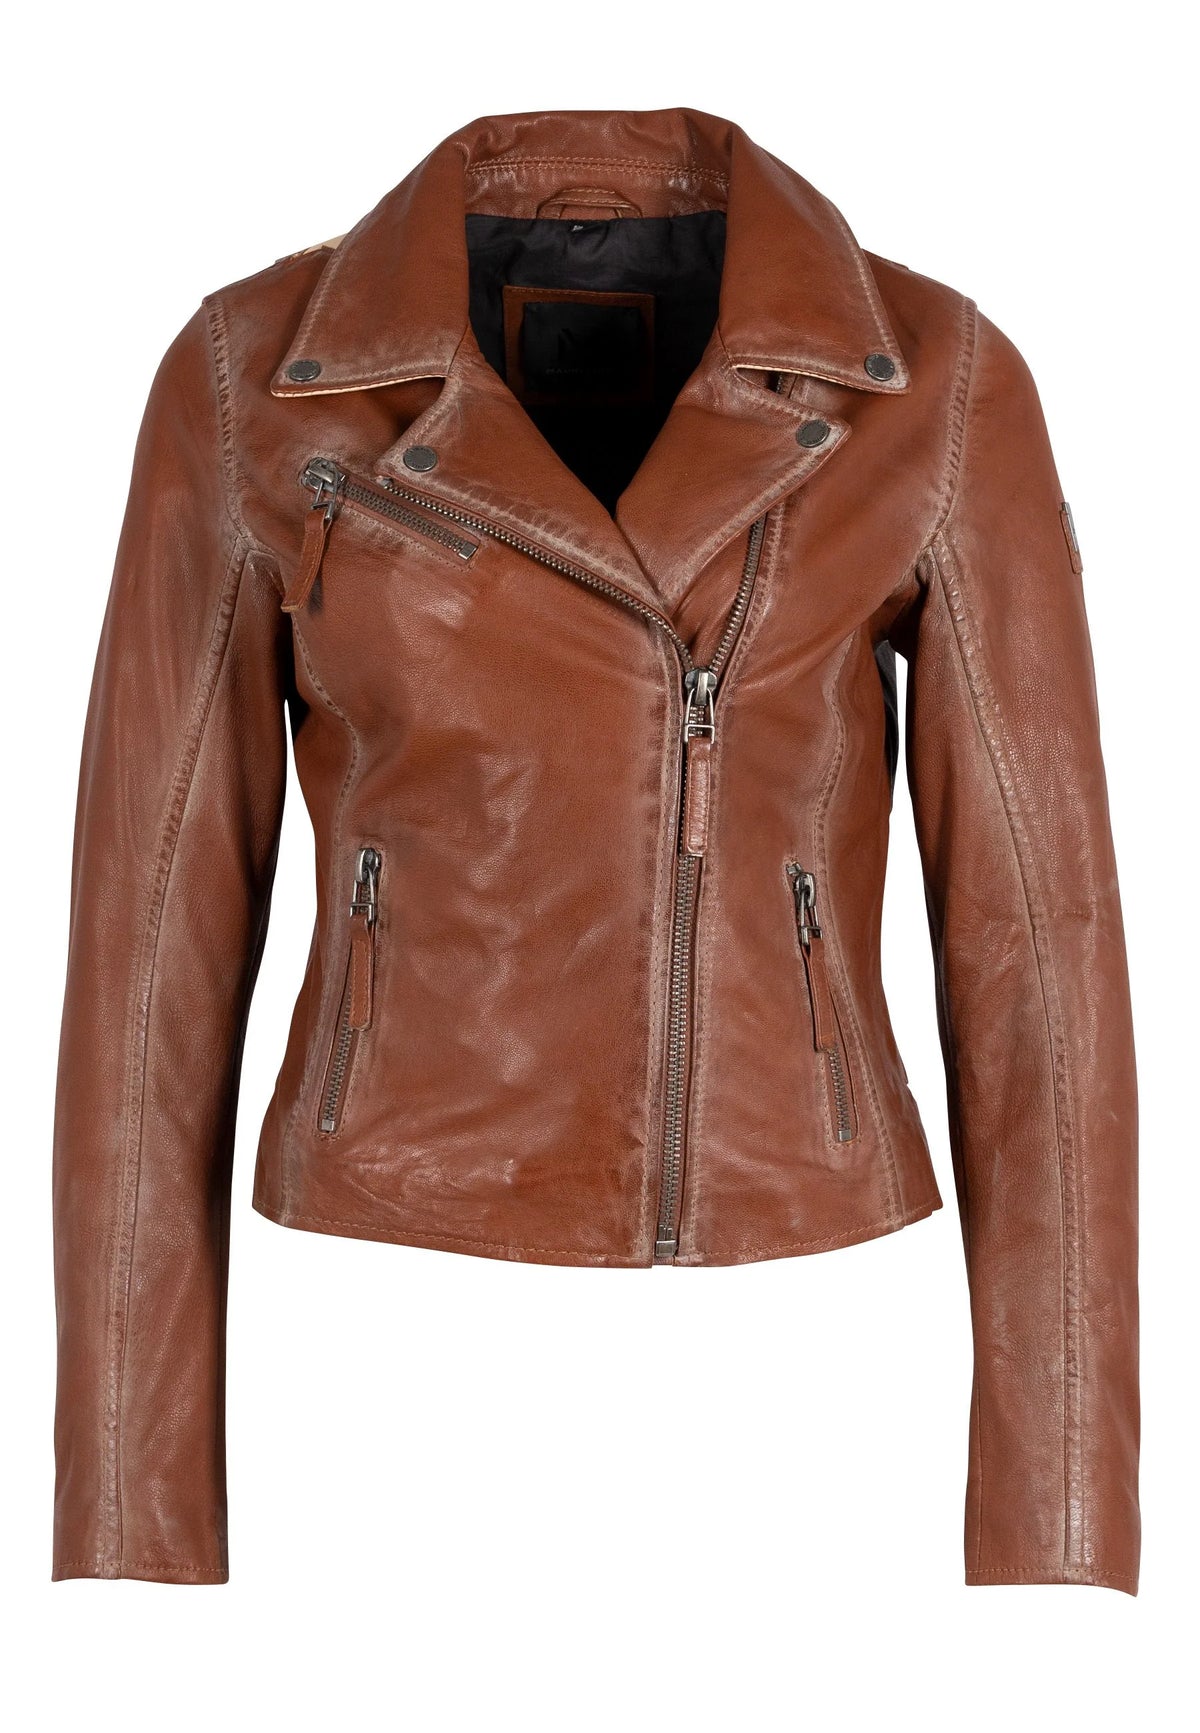 Christy Leather Jacket - Burnt Orange